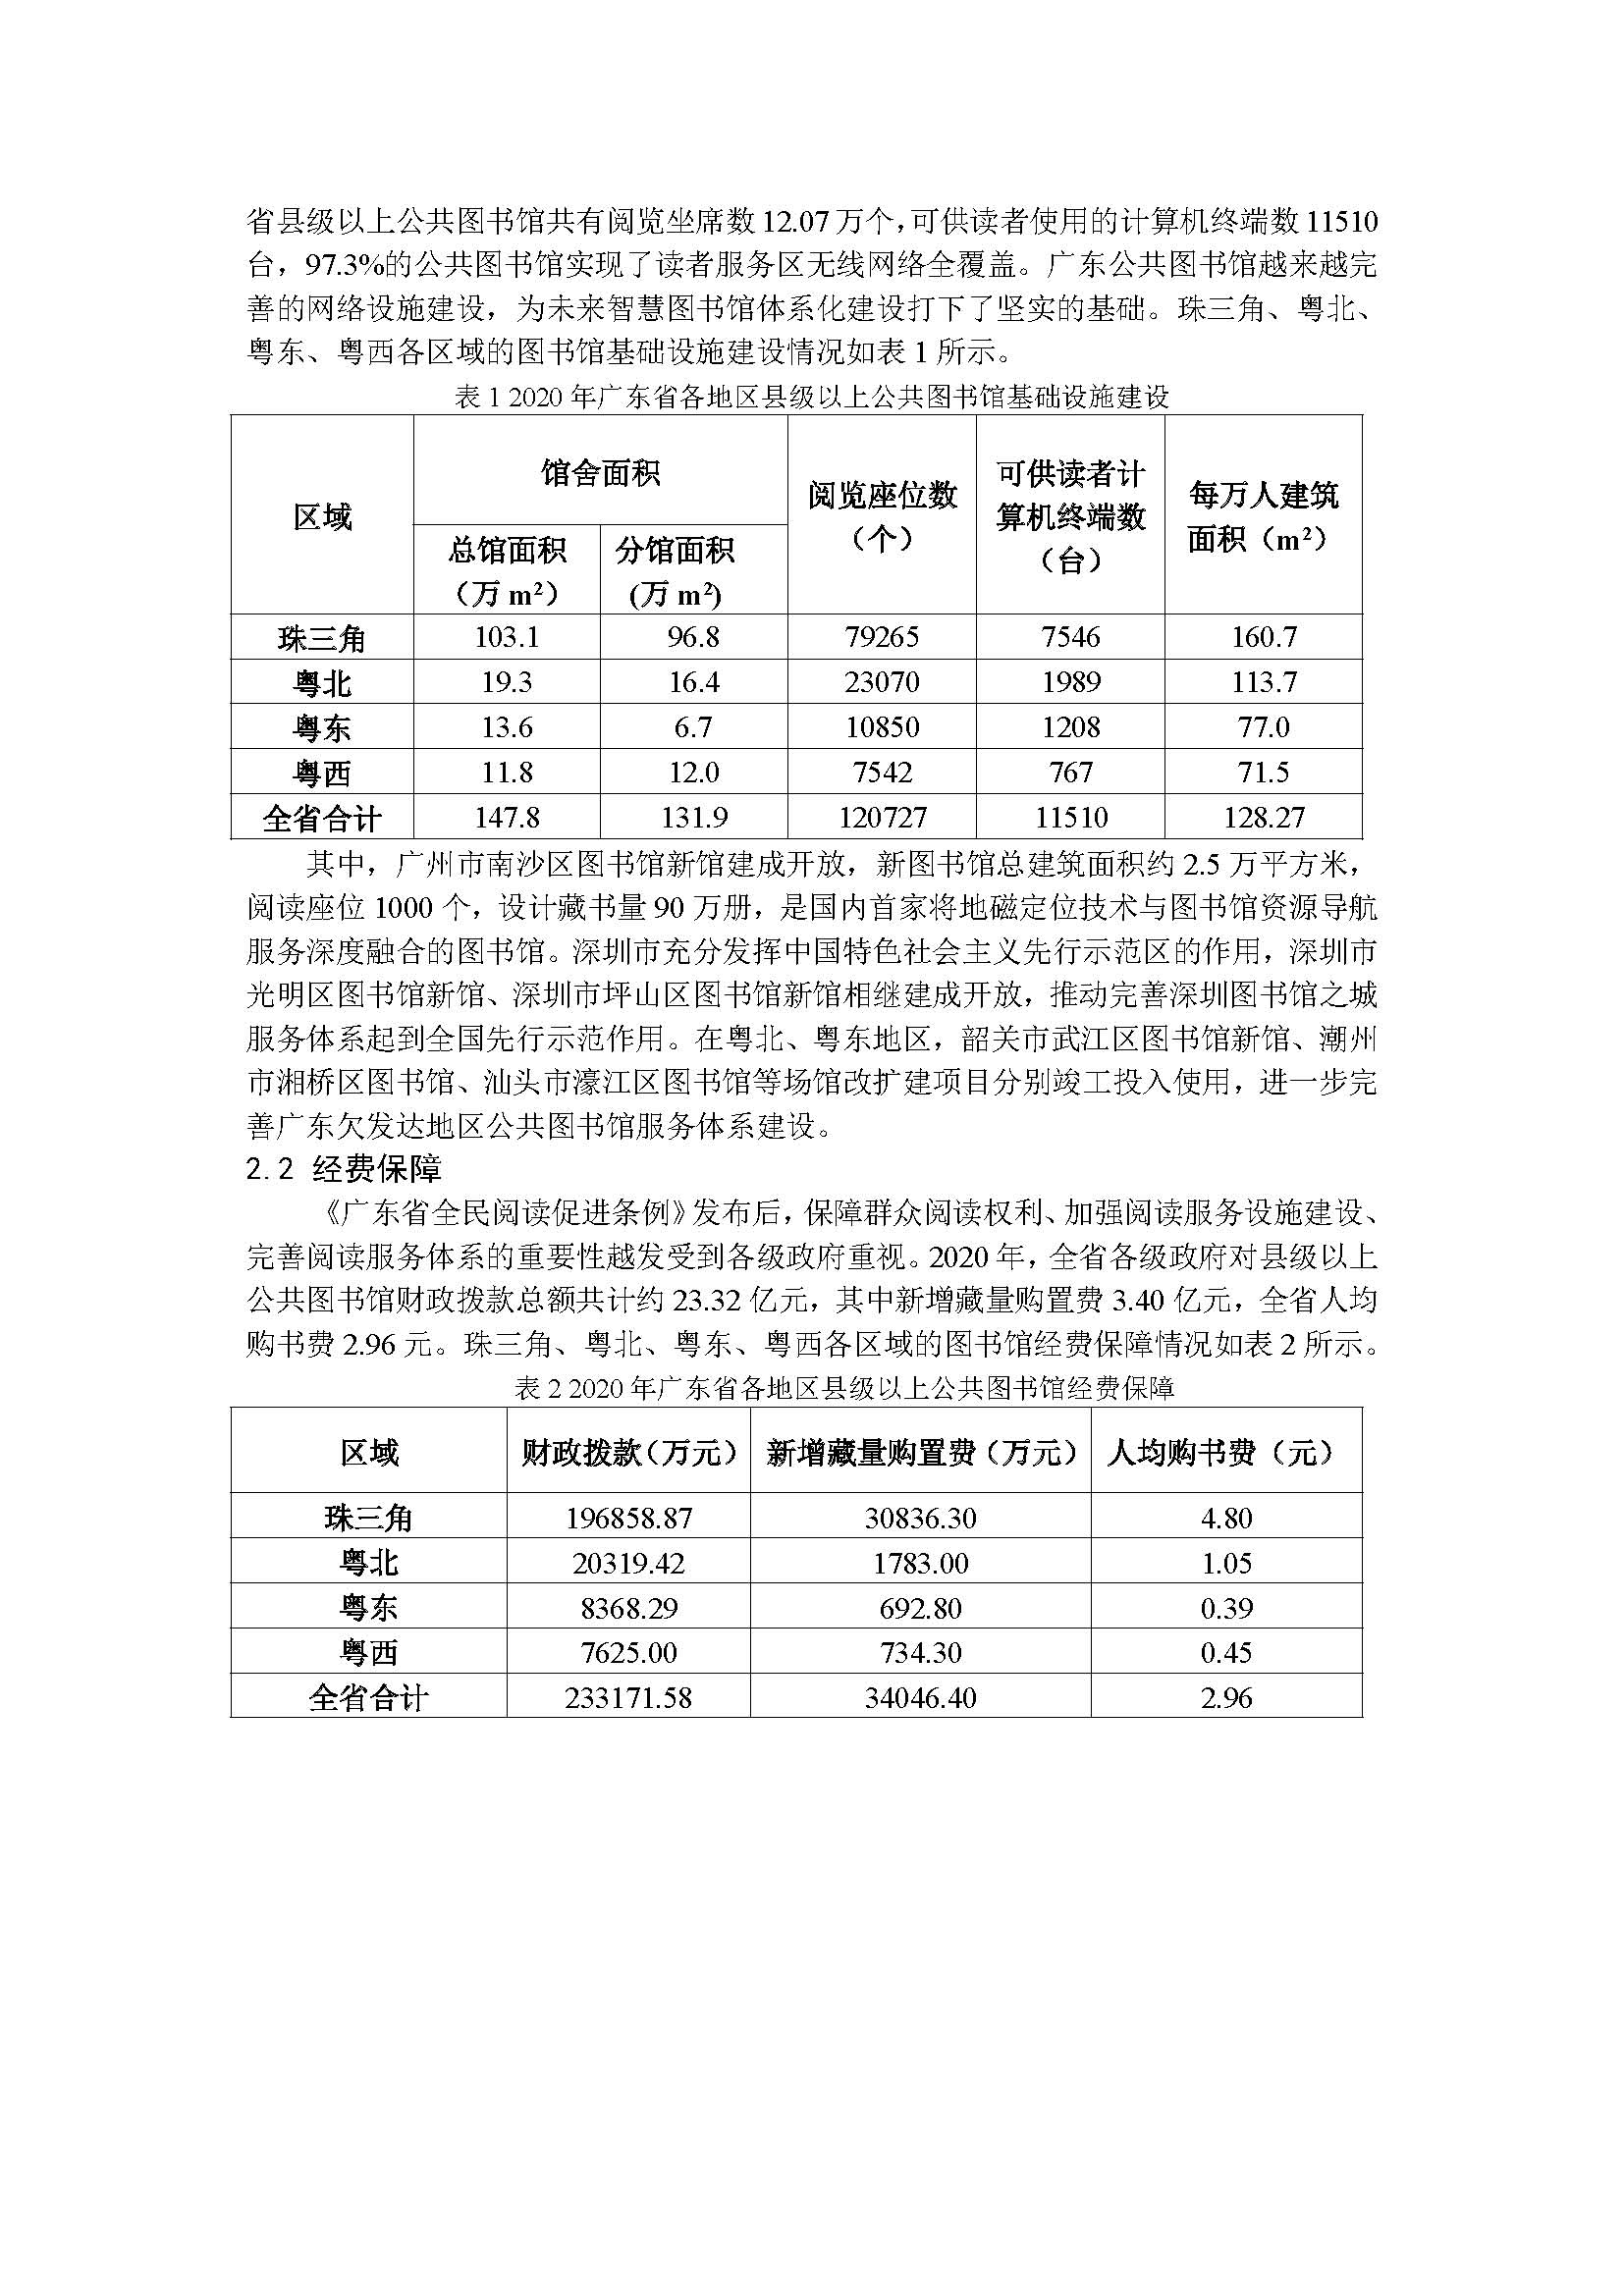 2020年广东省公共图书馆事业发展年度报告_页面_02.jpg